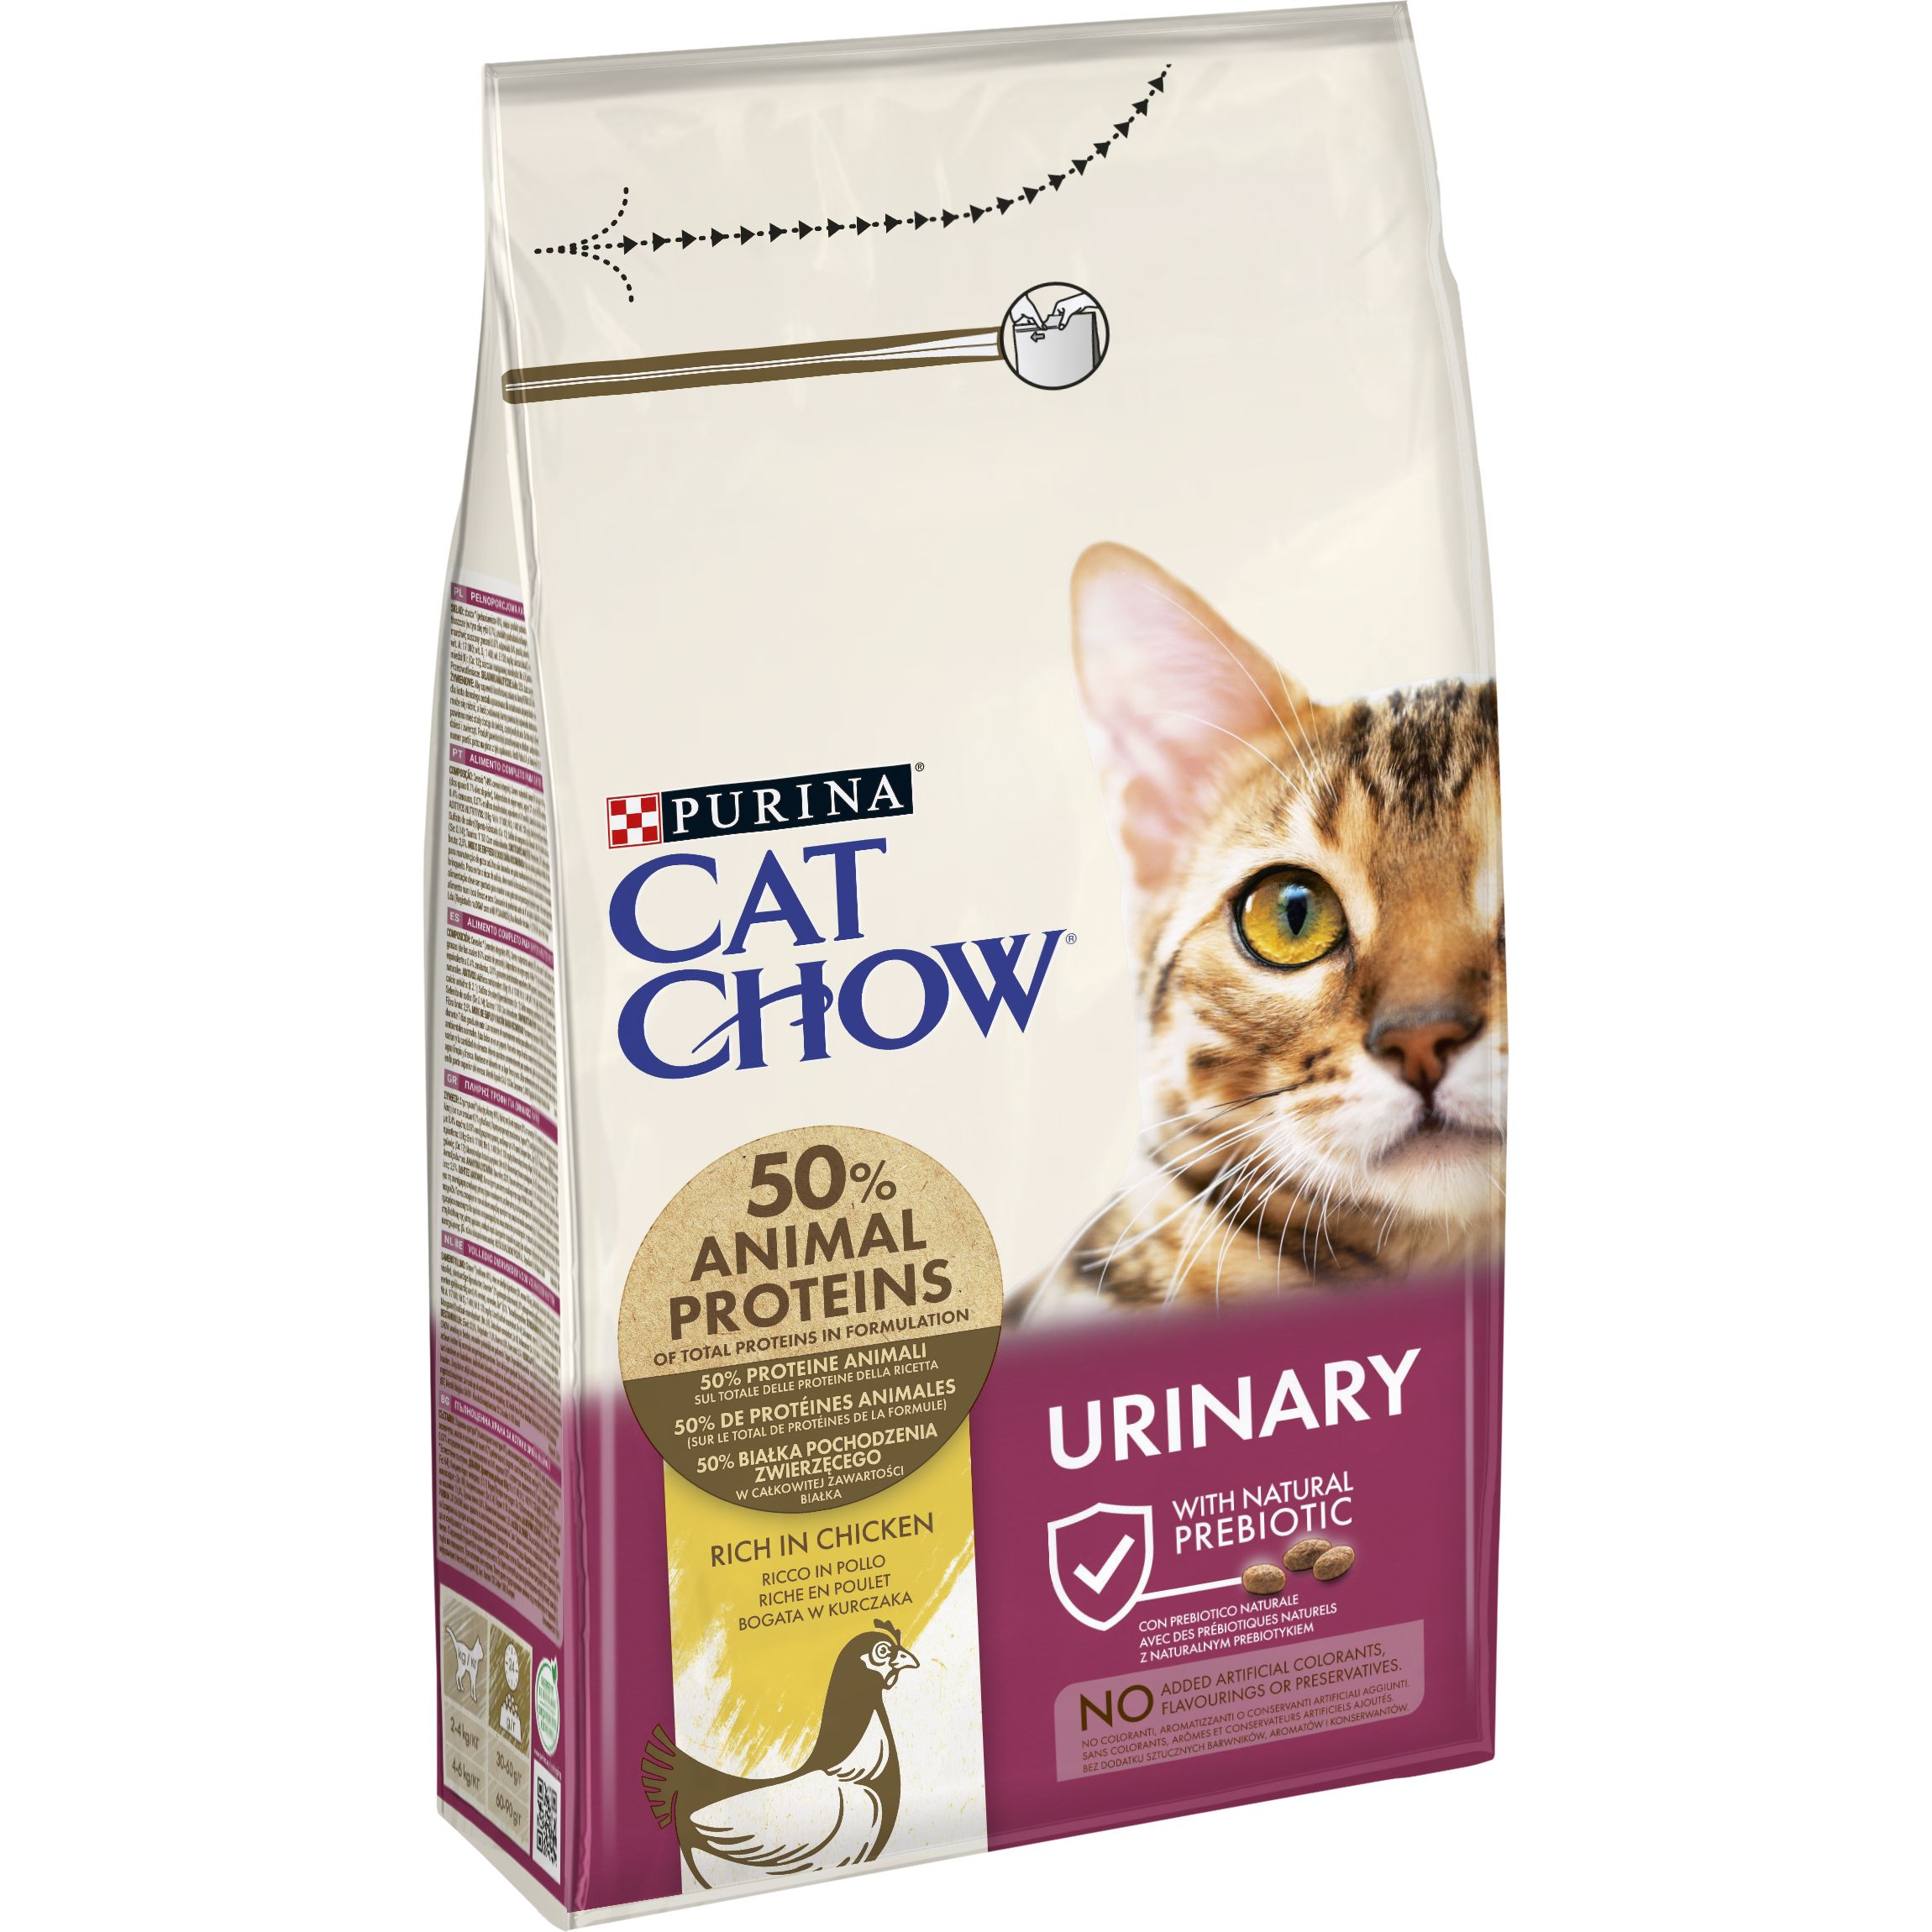 Сухой корм для кошек для поддержания здоровья мочевыводящей системы Cat Chow Urinary Tract Health с курицей 1.5 кг - фото 3